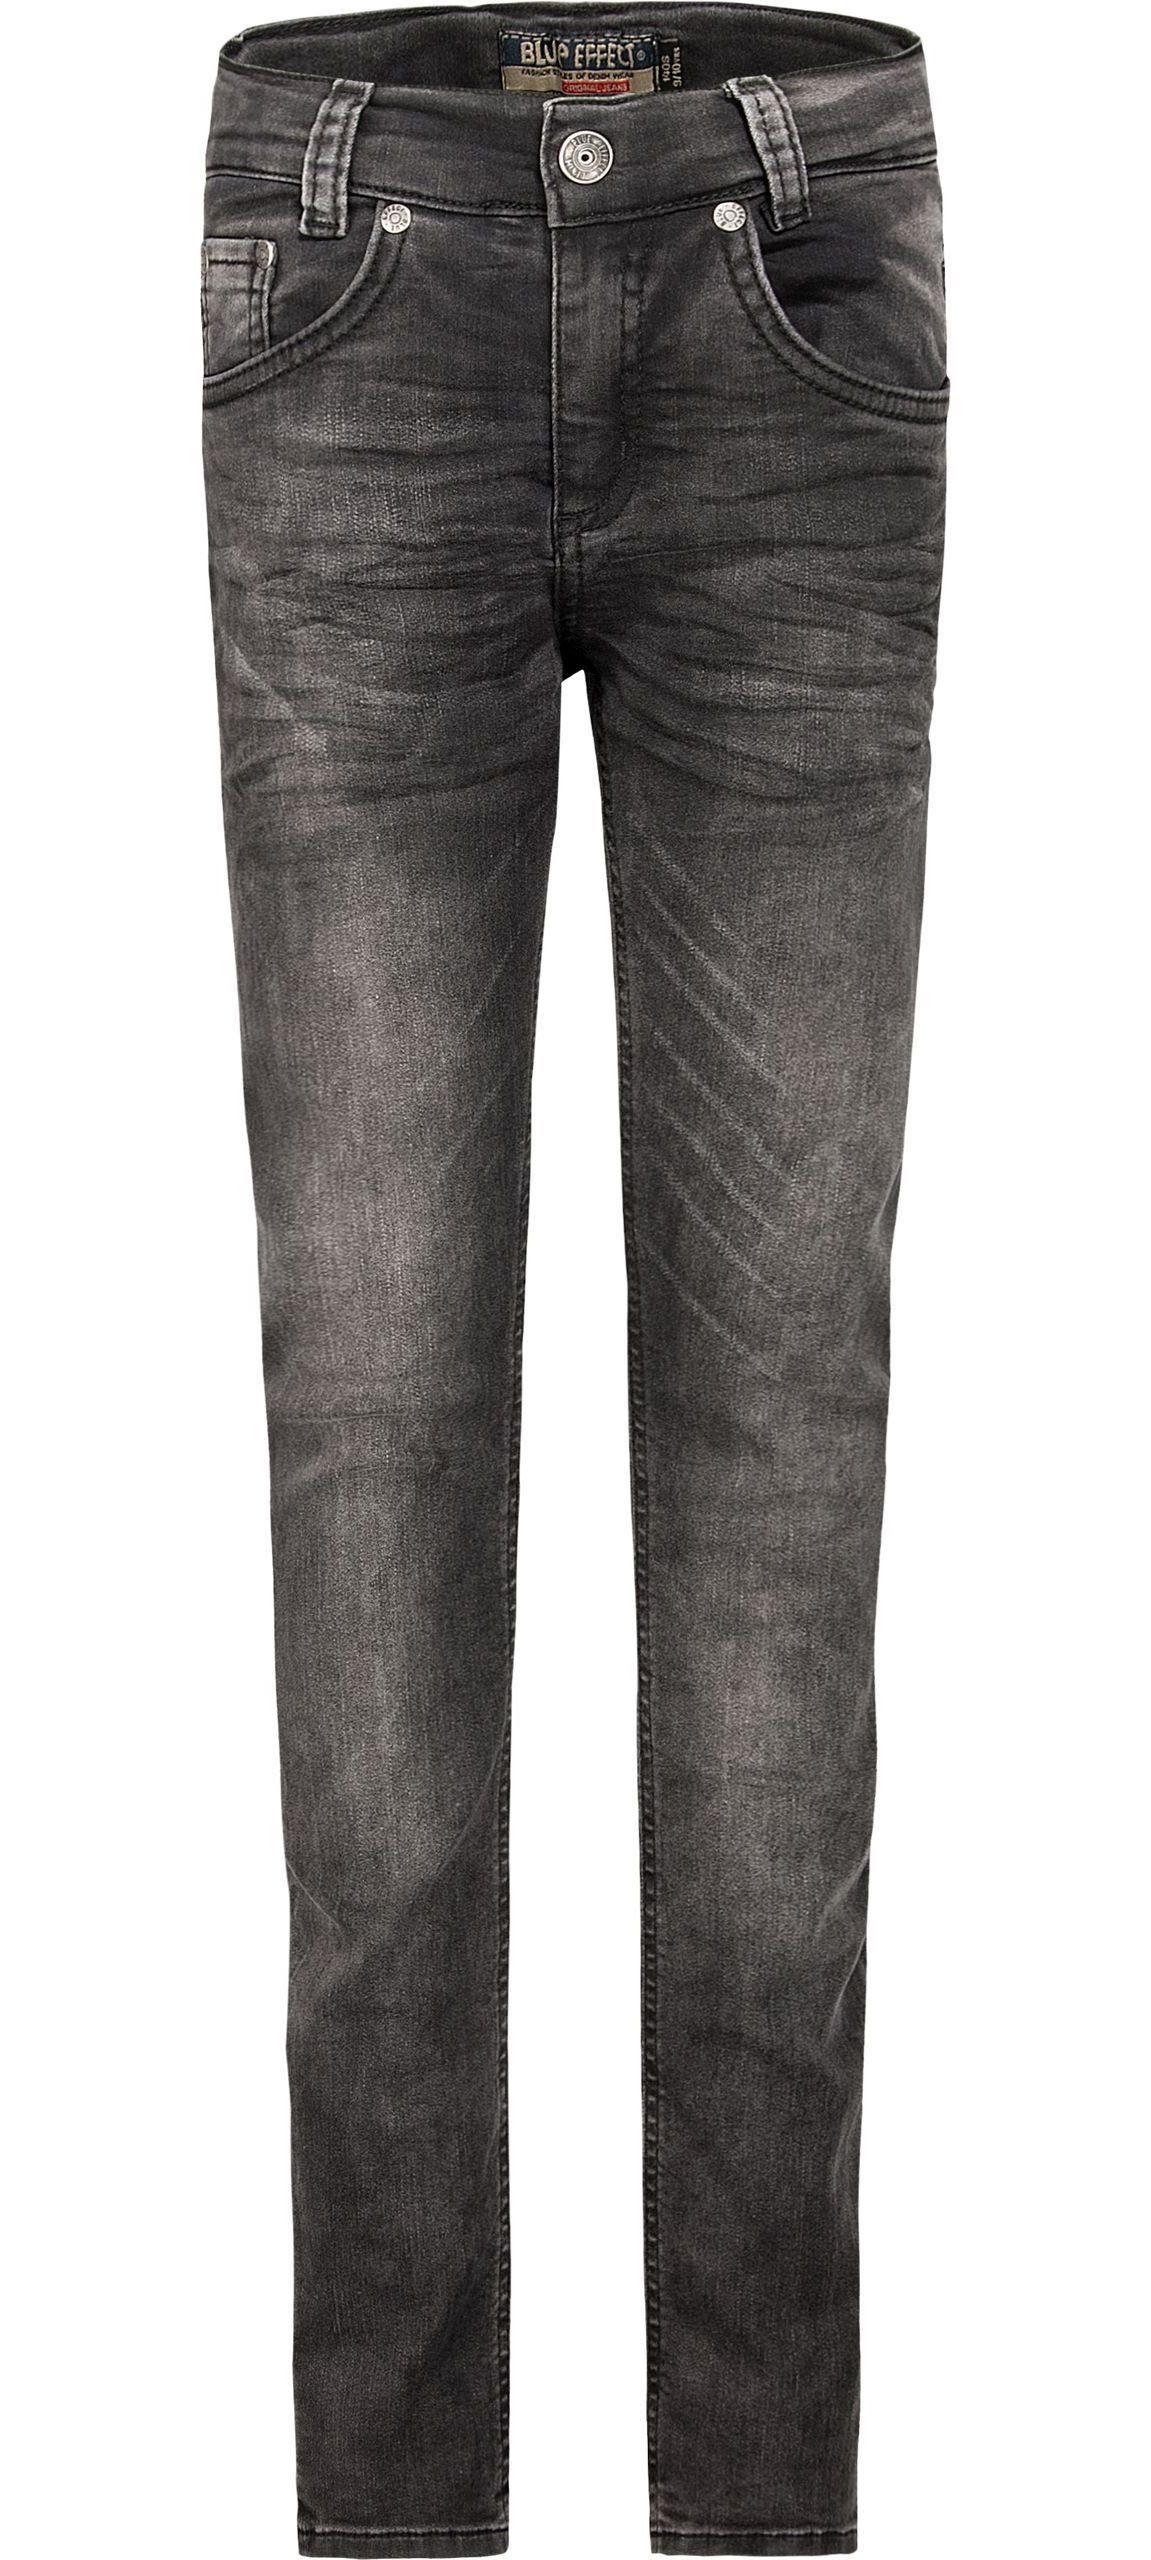 Skinny denim EFFECT black Hose BLUE fit ultrastretch Jeans Slim-fit-Jeans slim